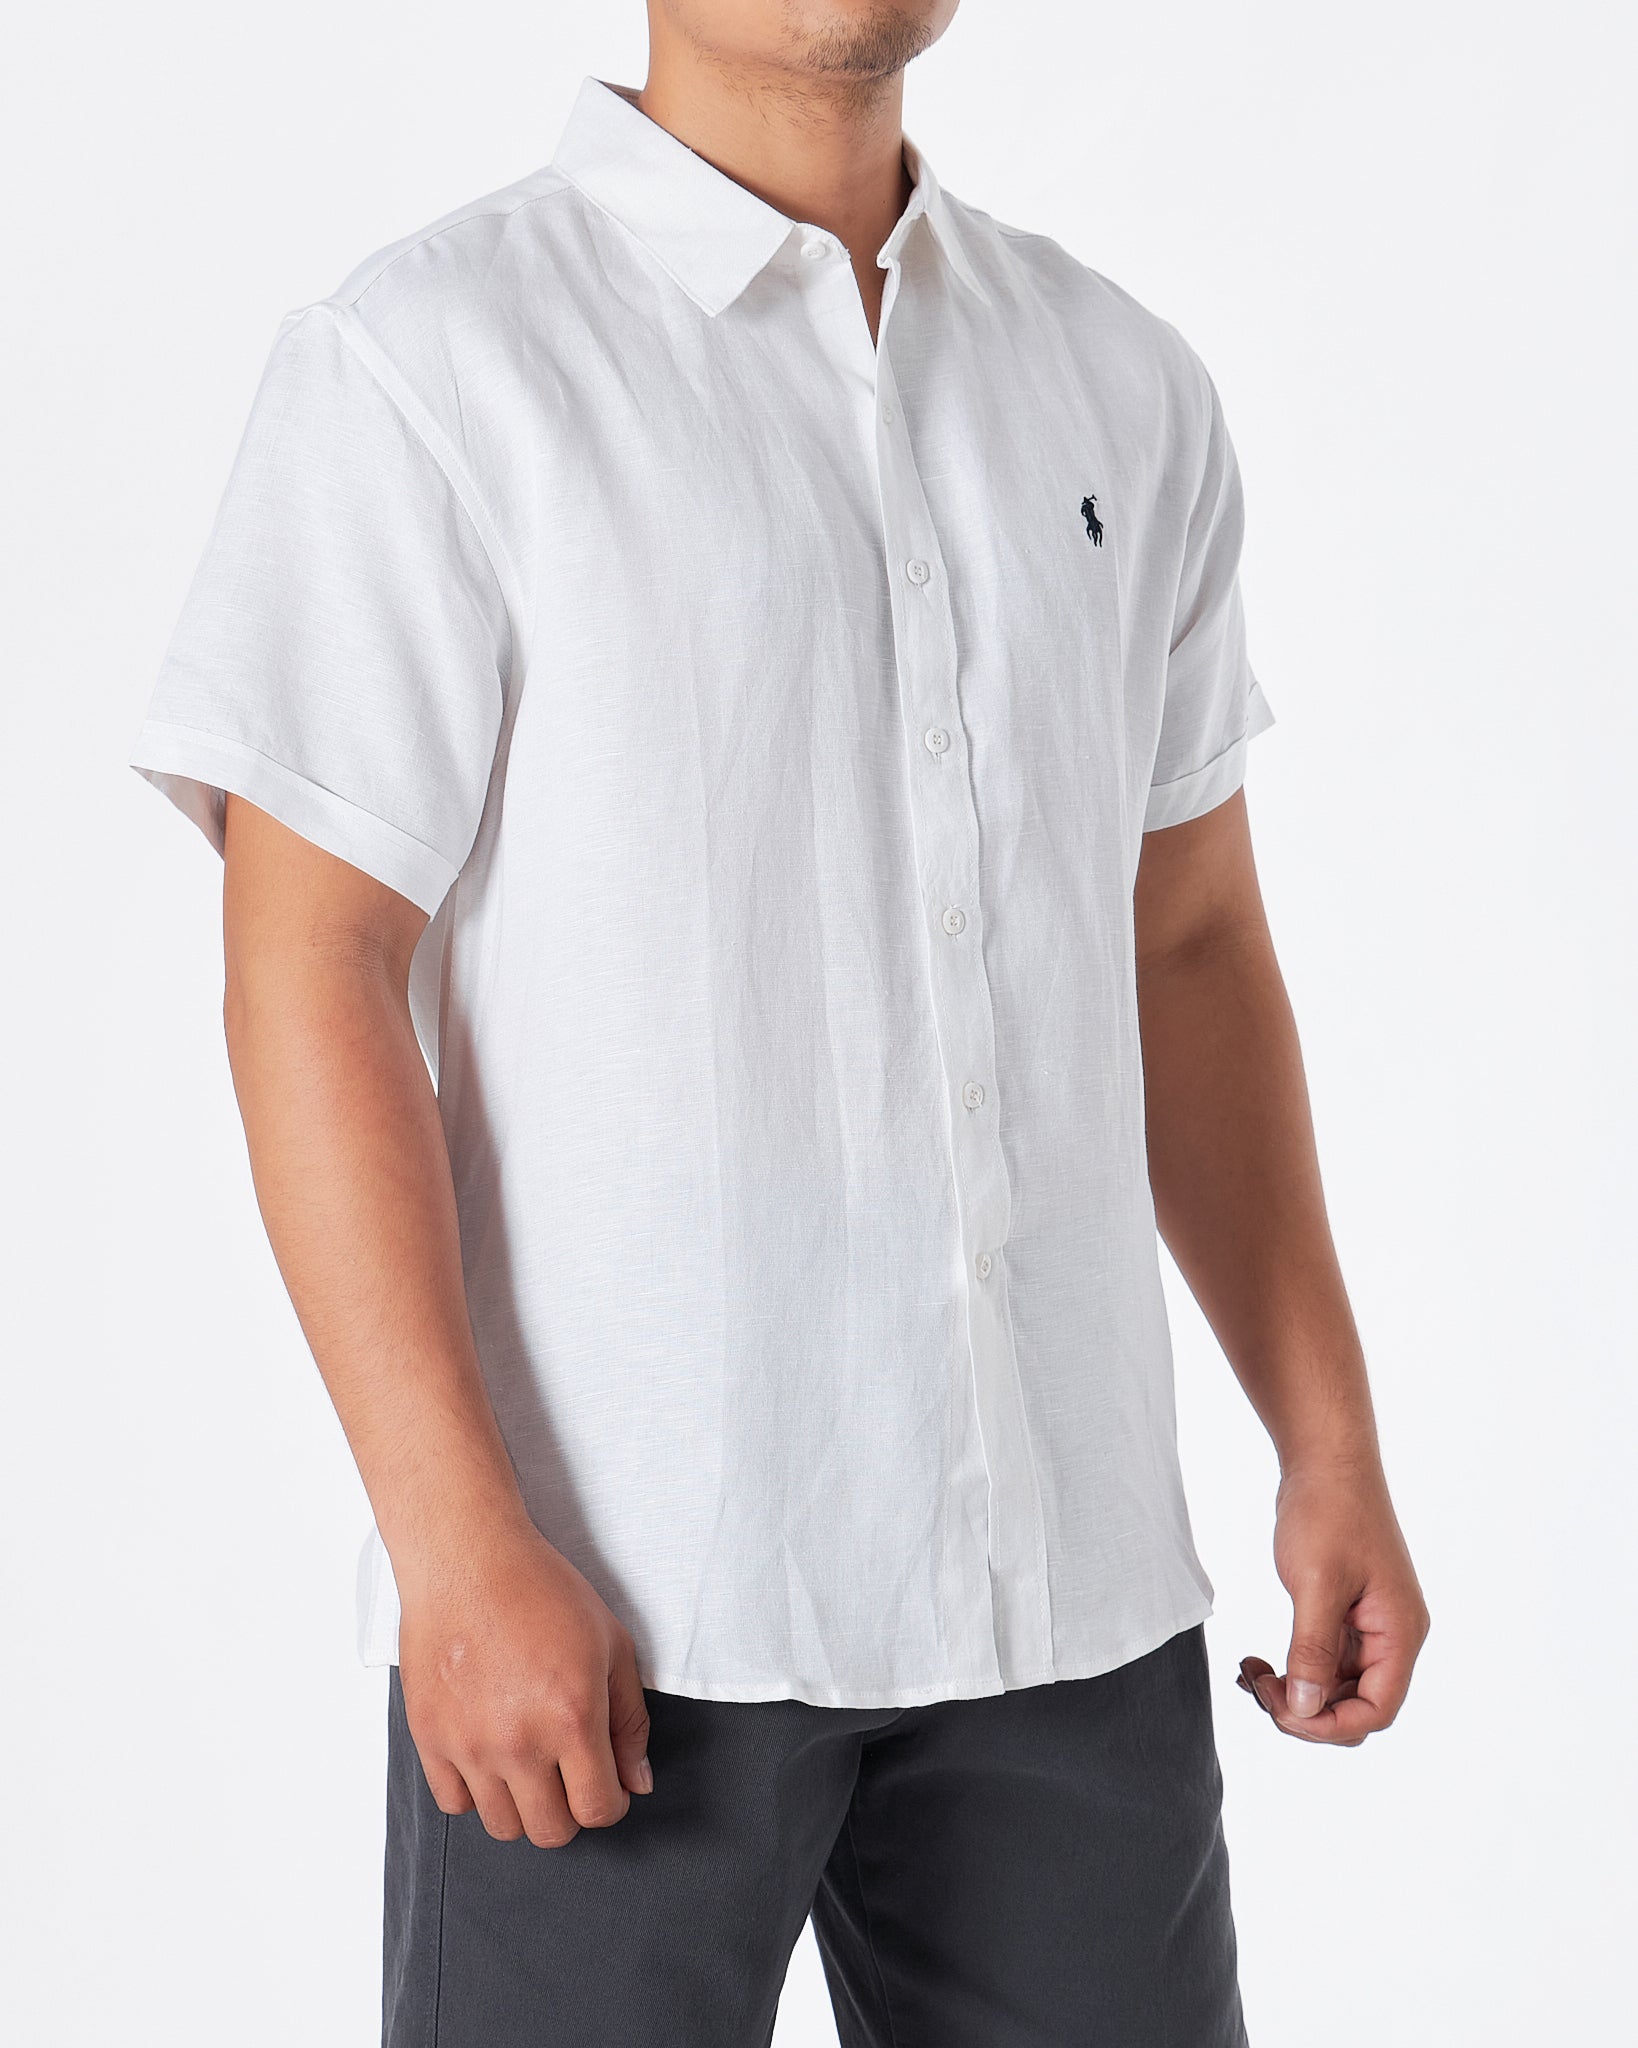 RL纯棉男士白衬衫短袖28.90